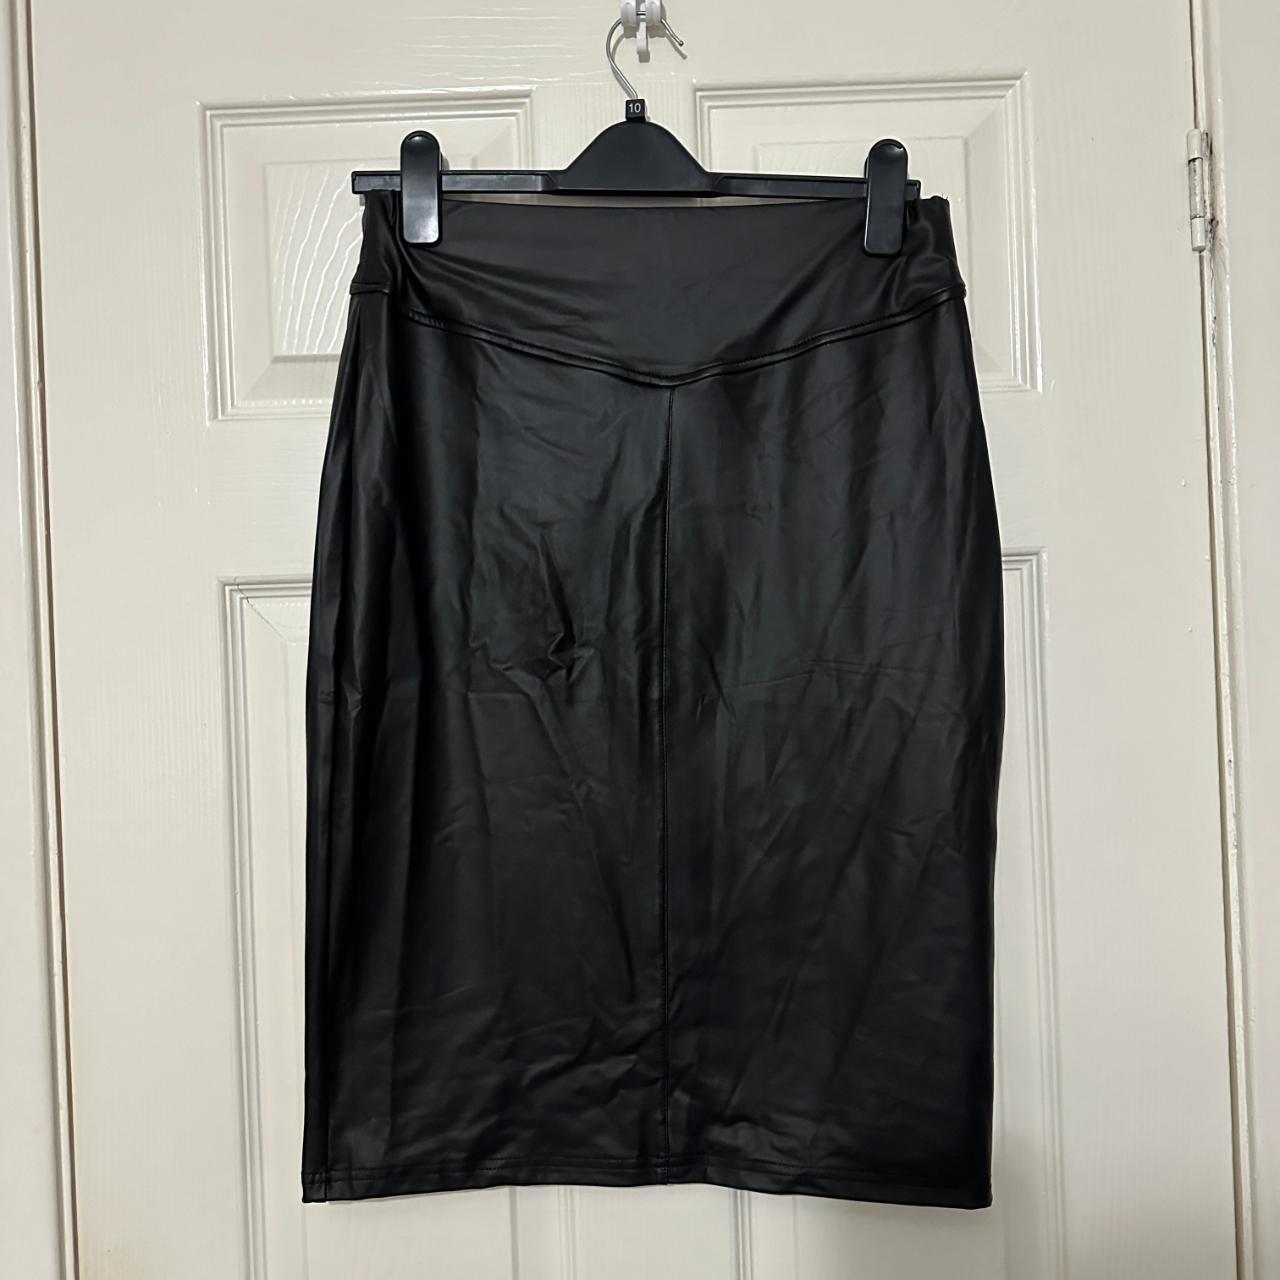 SHEIN BIZwear High Waist PU Leather Skirt Workwear